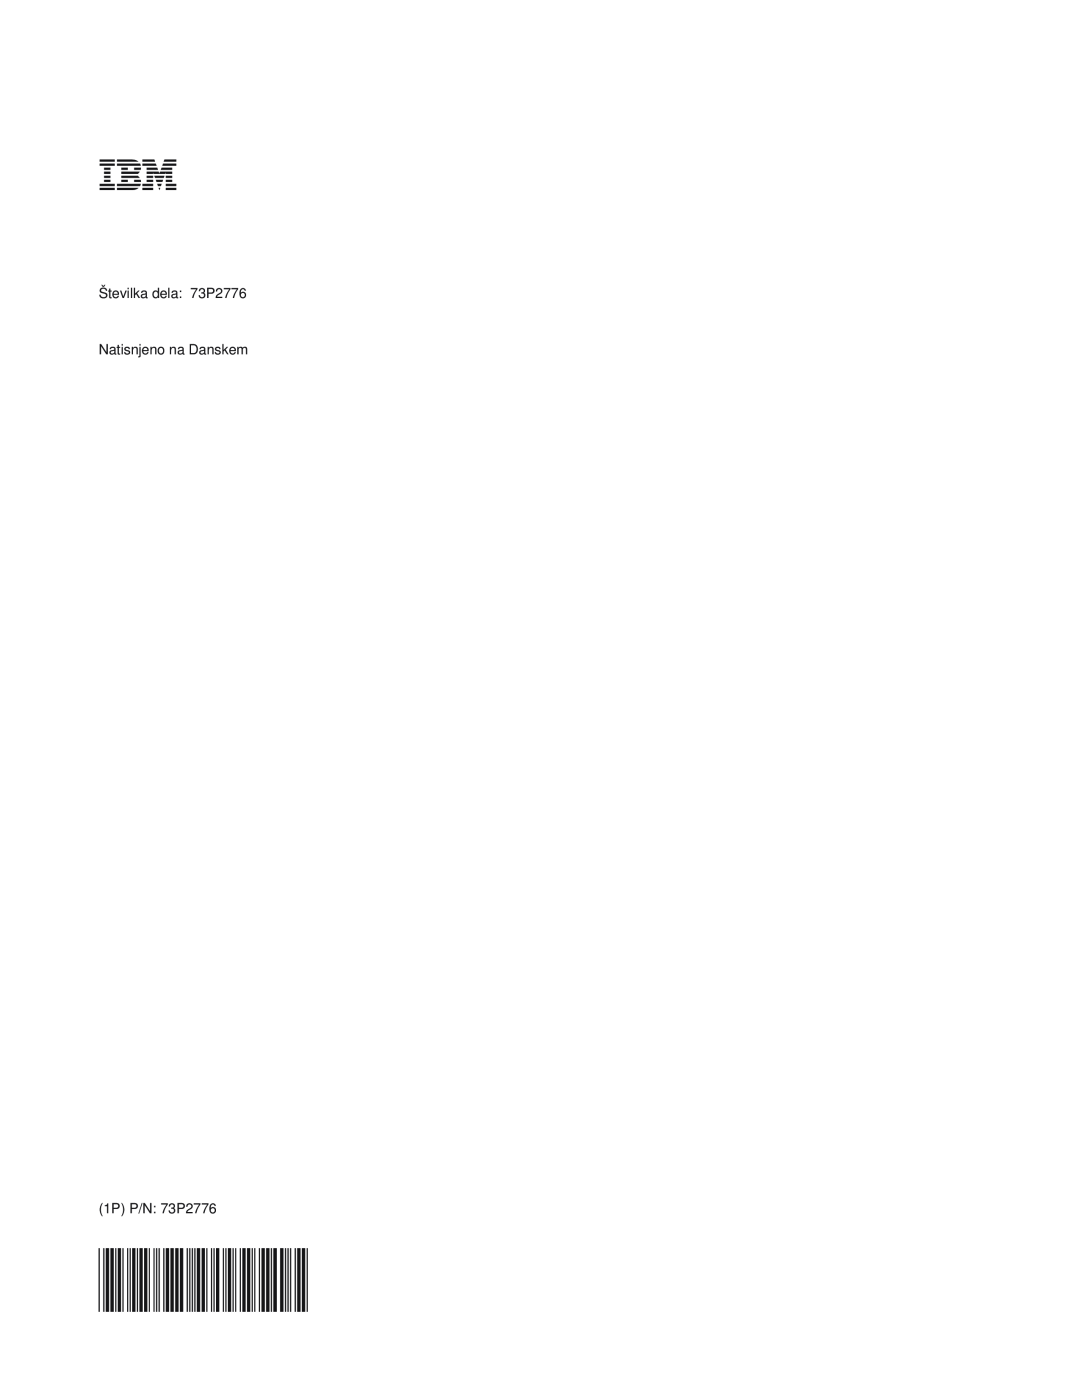 IBM E400 manual Številka dela 73P2776 Natisnjeno na Danskem, 1P P/N 73P2776 